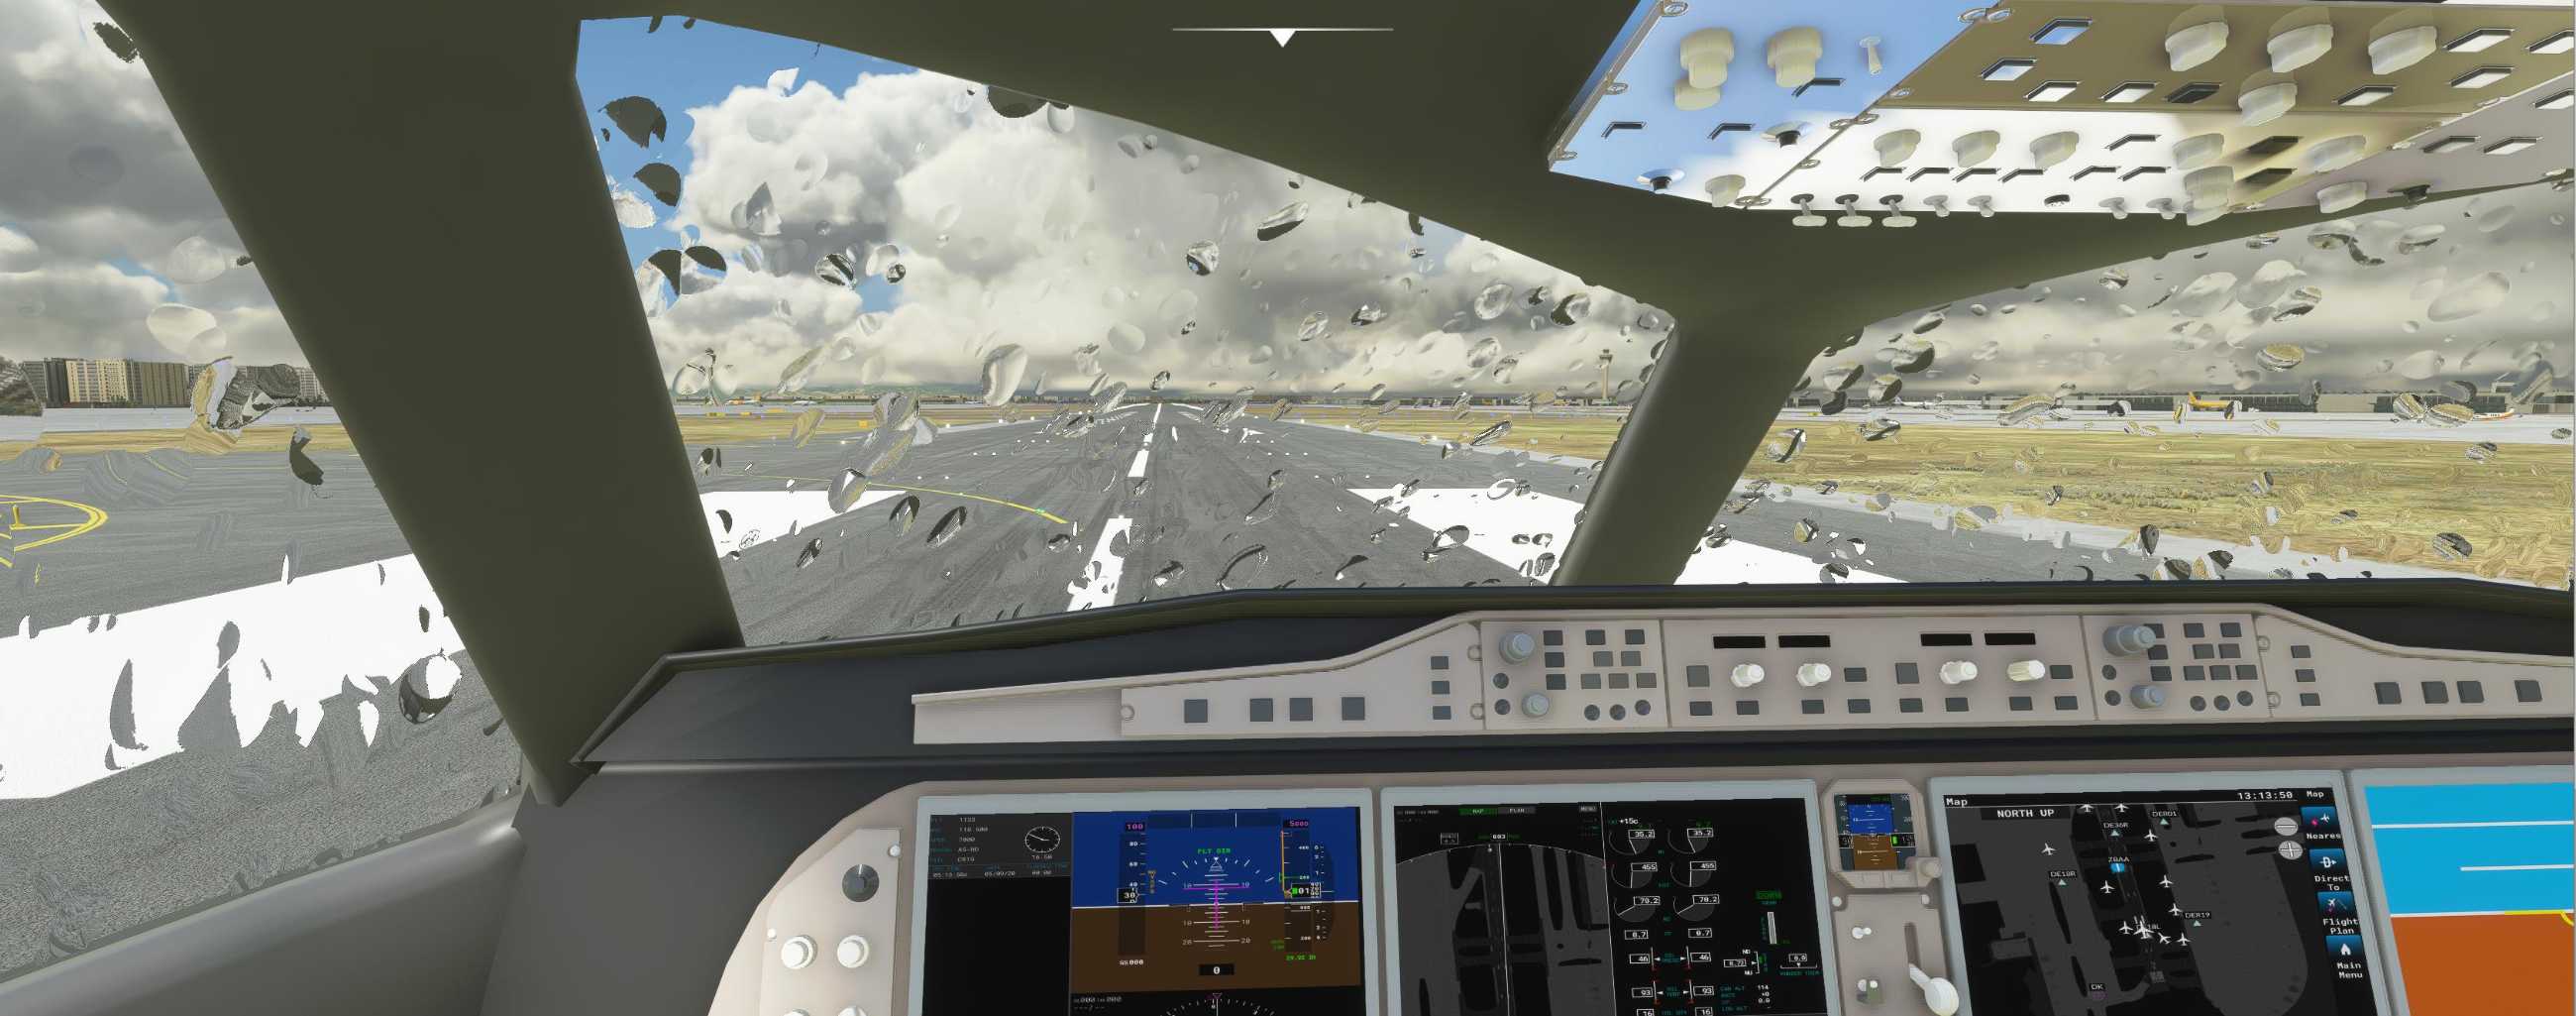 FYCYC-C919 国产大飞机机模 微软模拟飞行演示-2108 